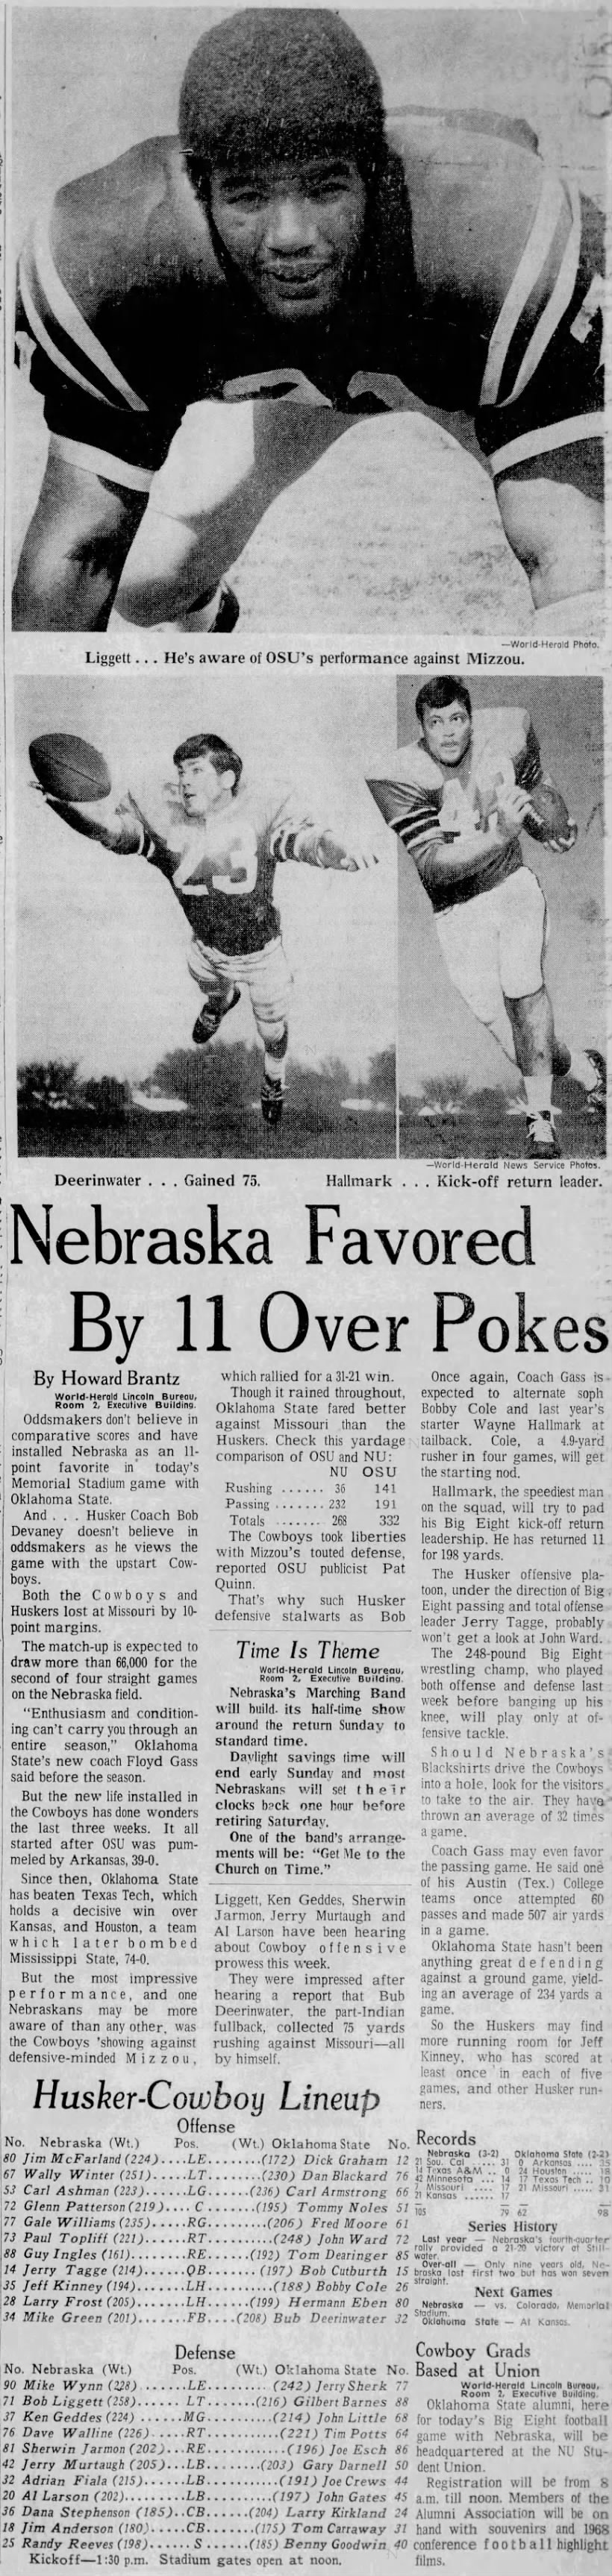 1969 Nebraska-Oklahoma State football pregame story and lineups